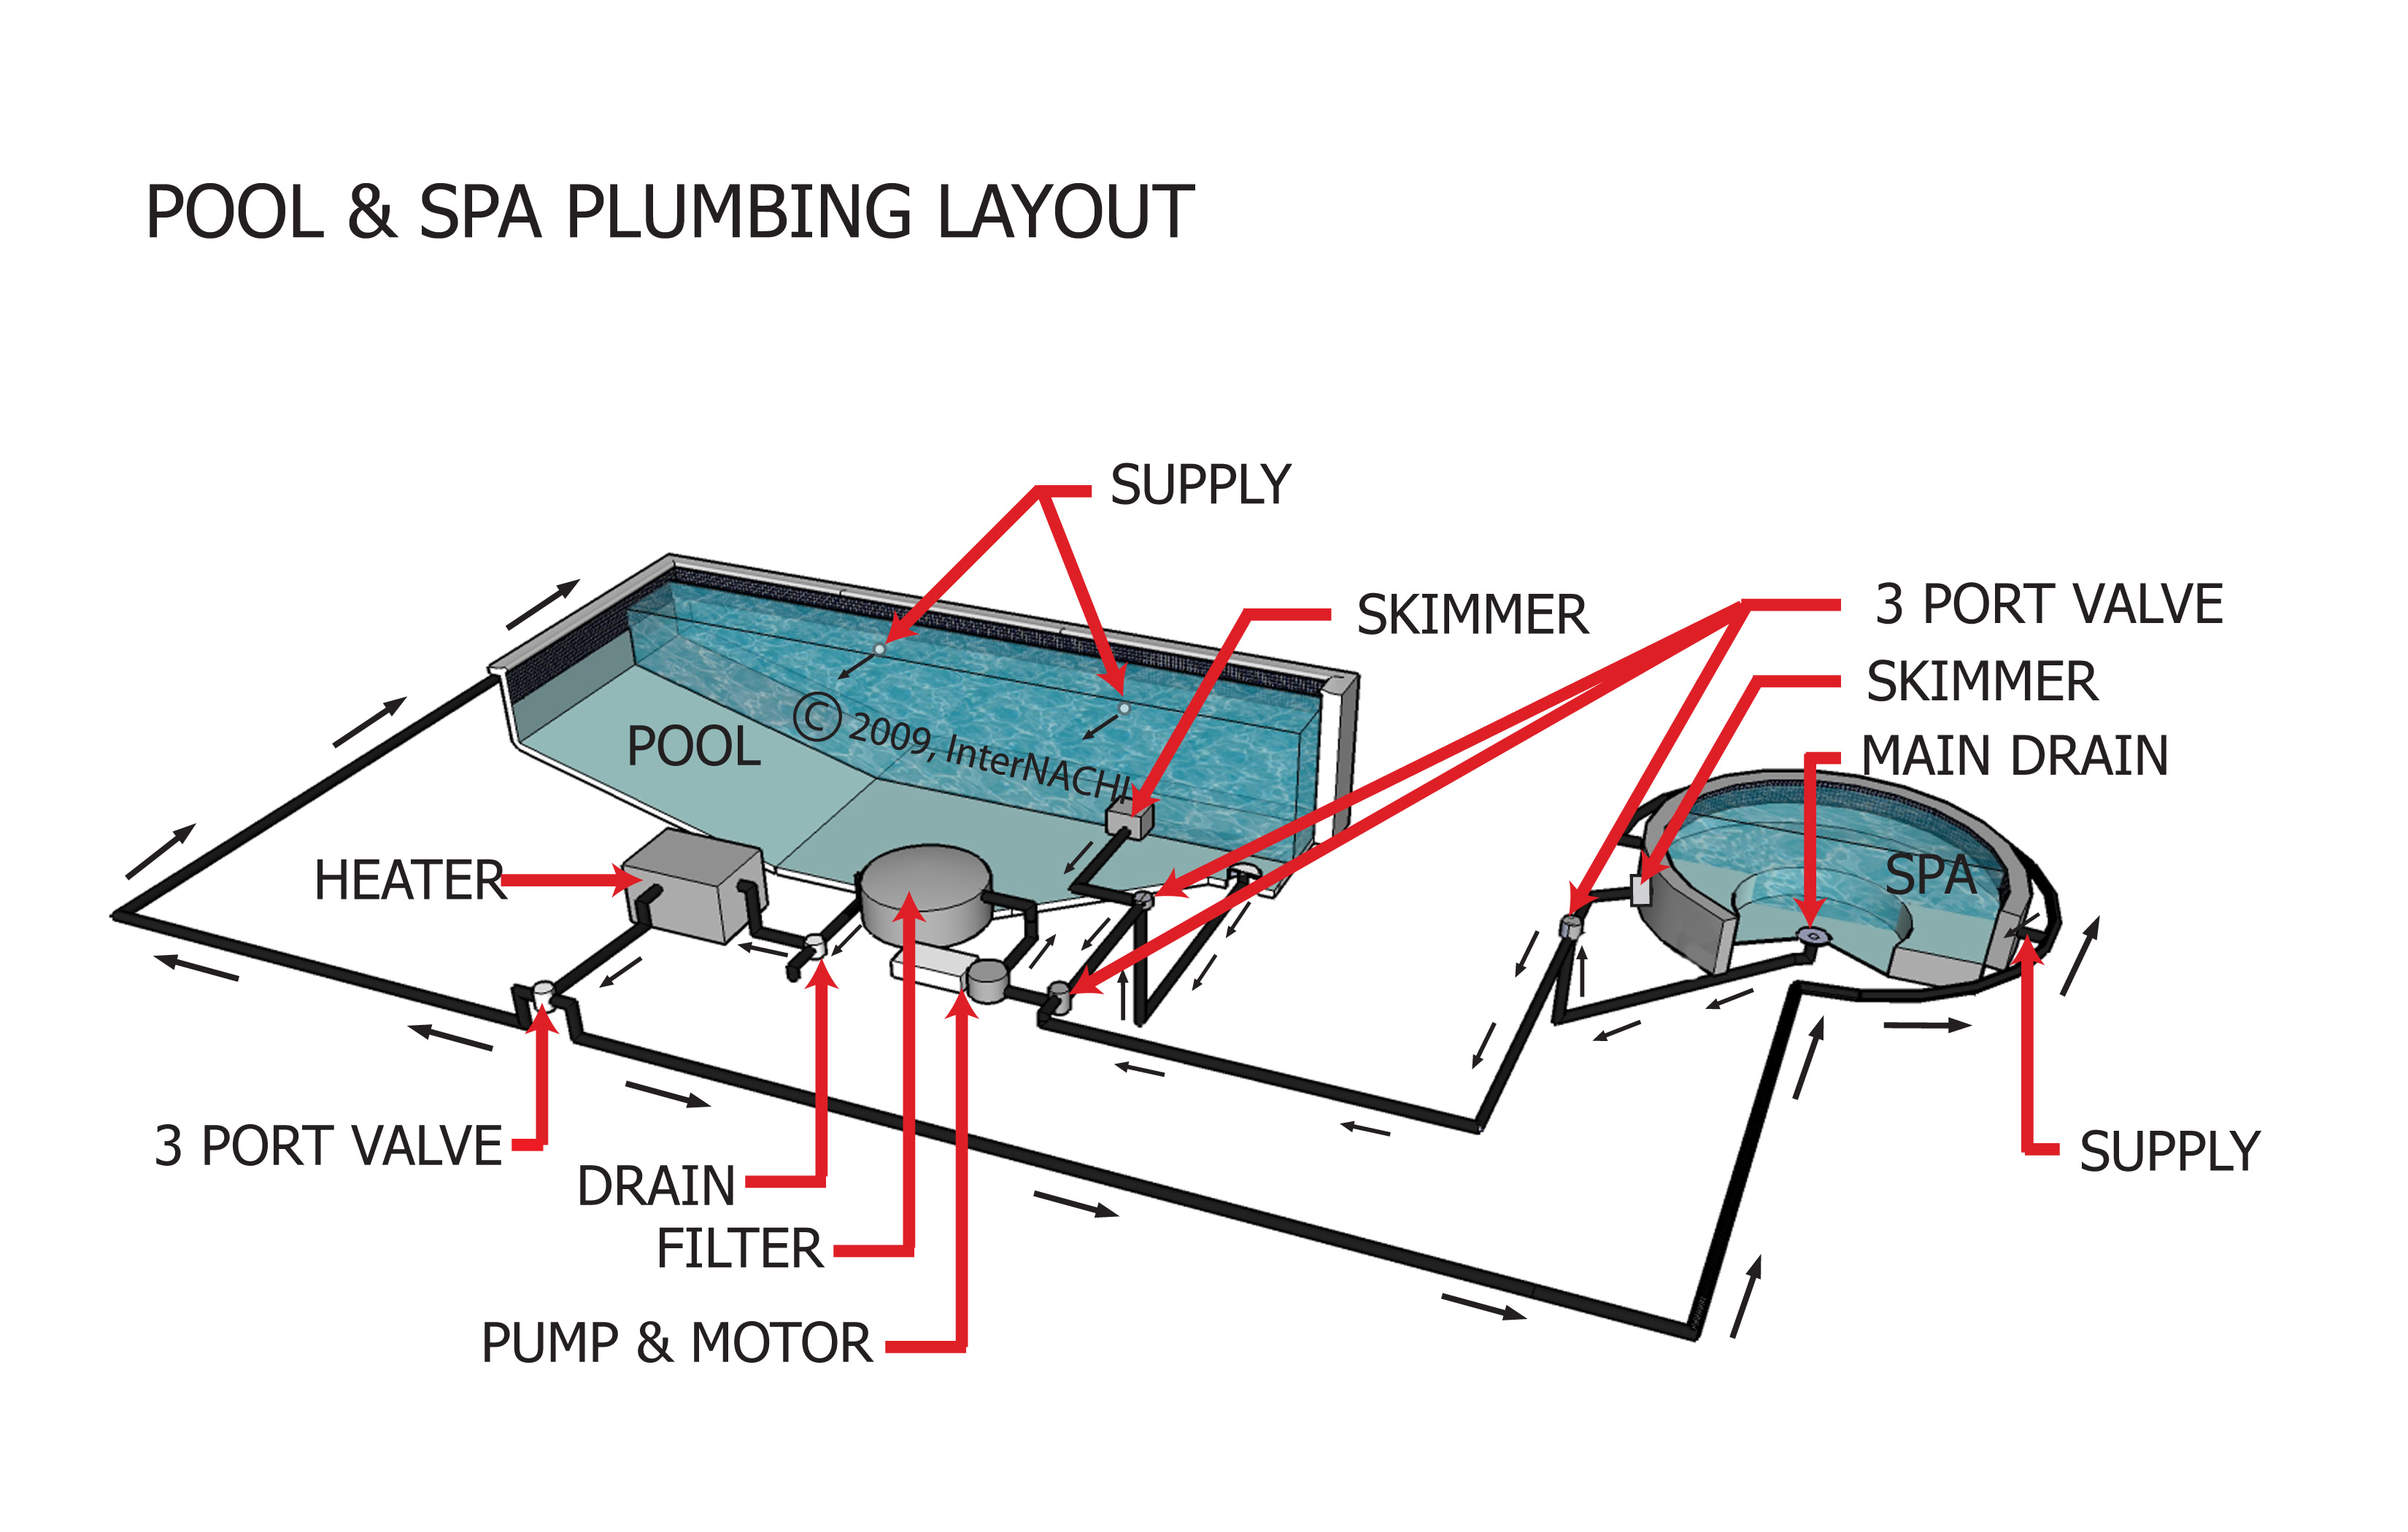 swimming pool pipework diagram